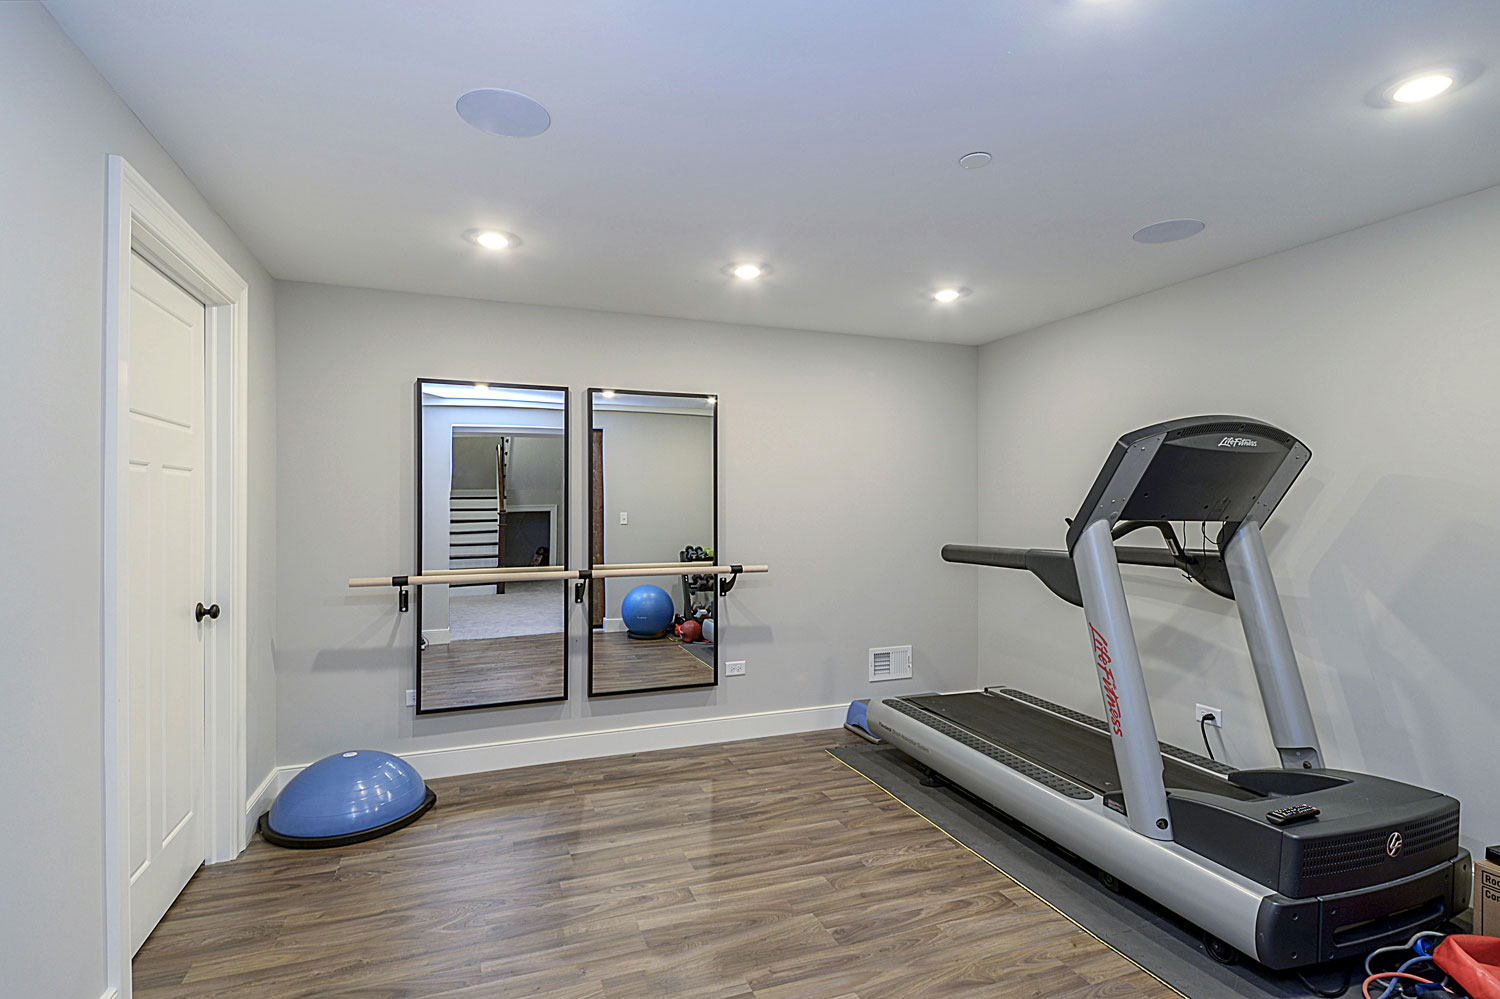 Workout Exercise Room Basement Remodeling Ideas Glen Ellyn Sebring Design Build